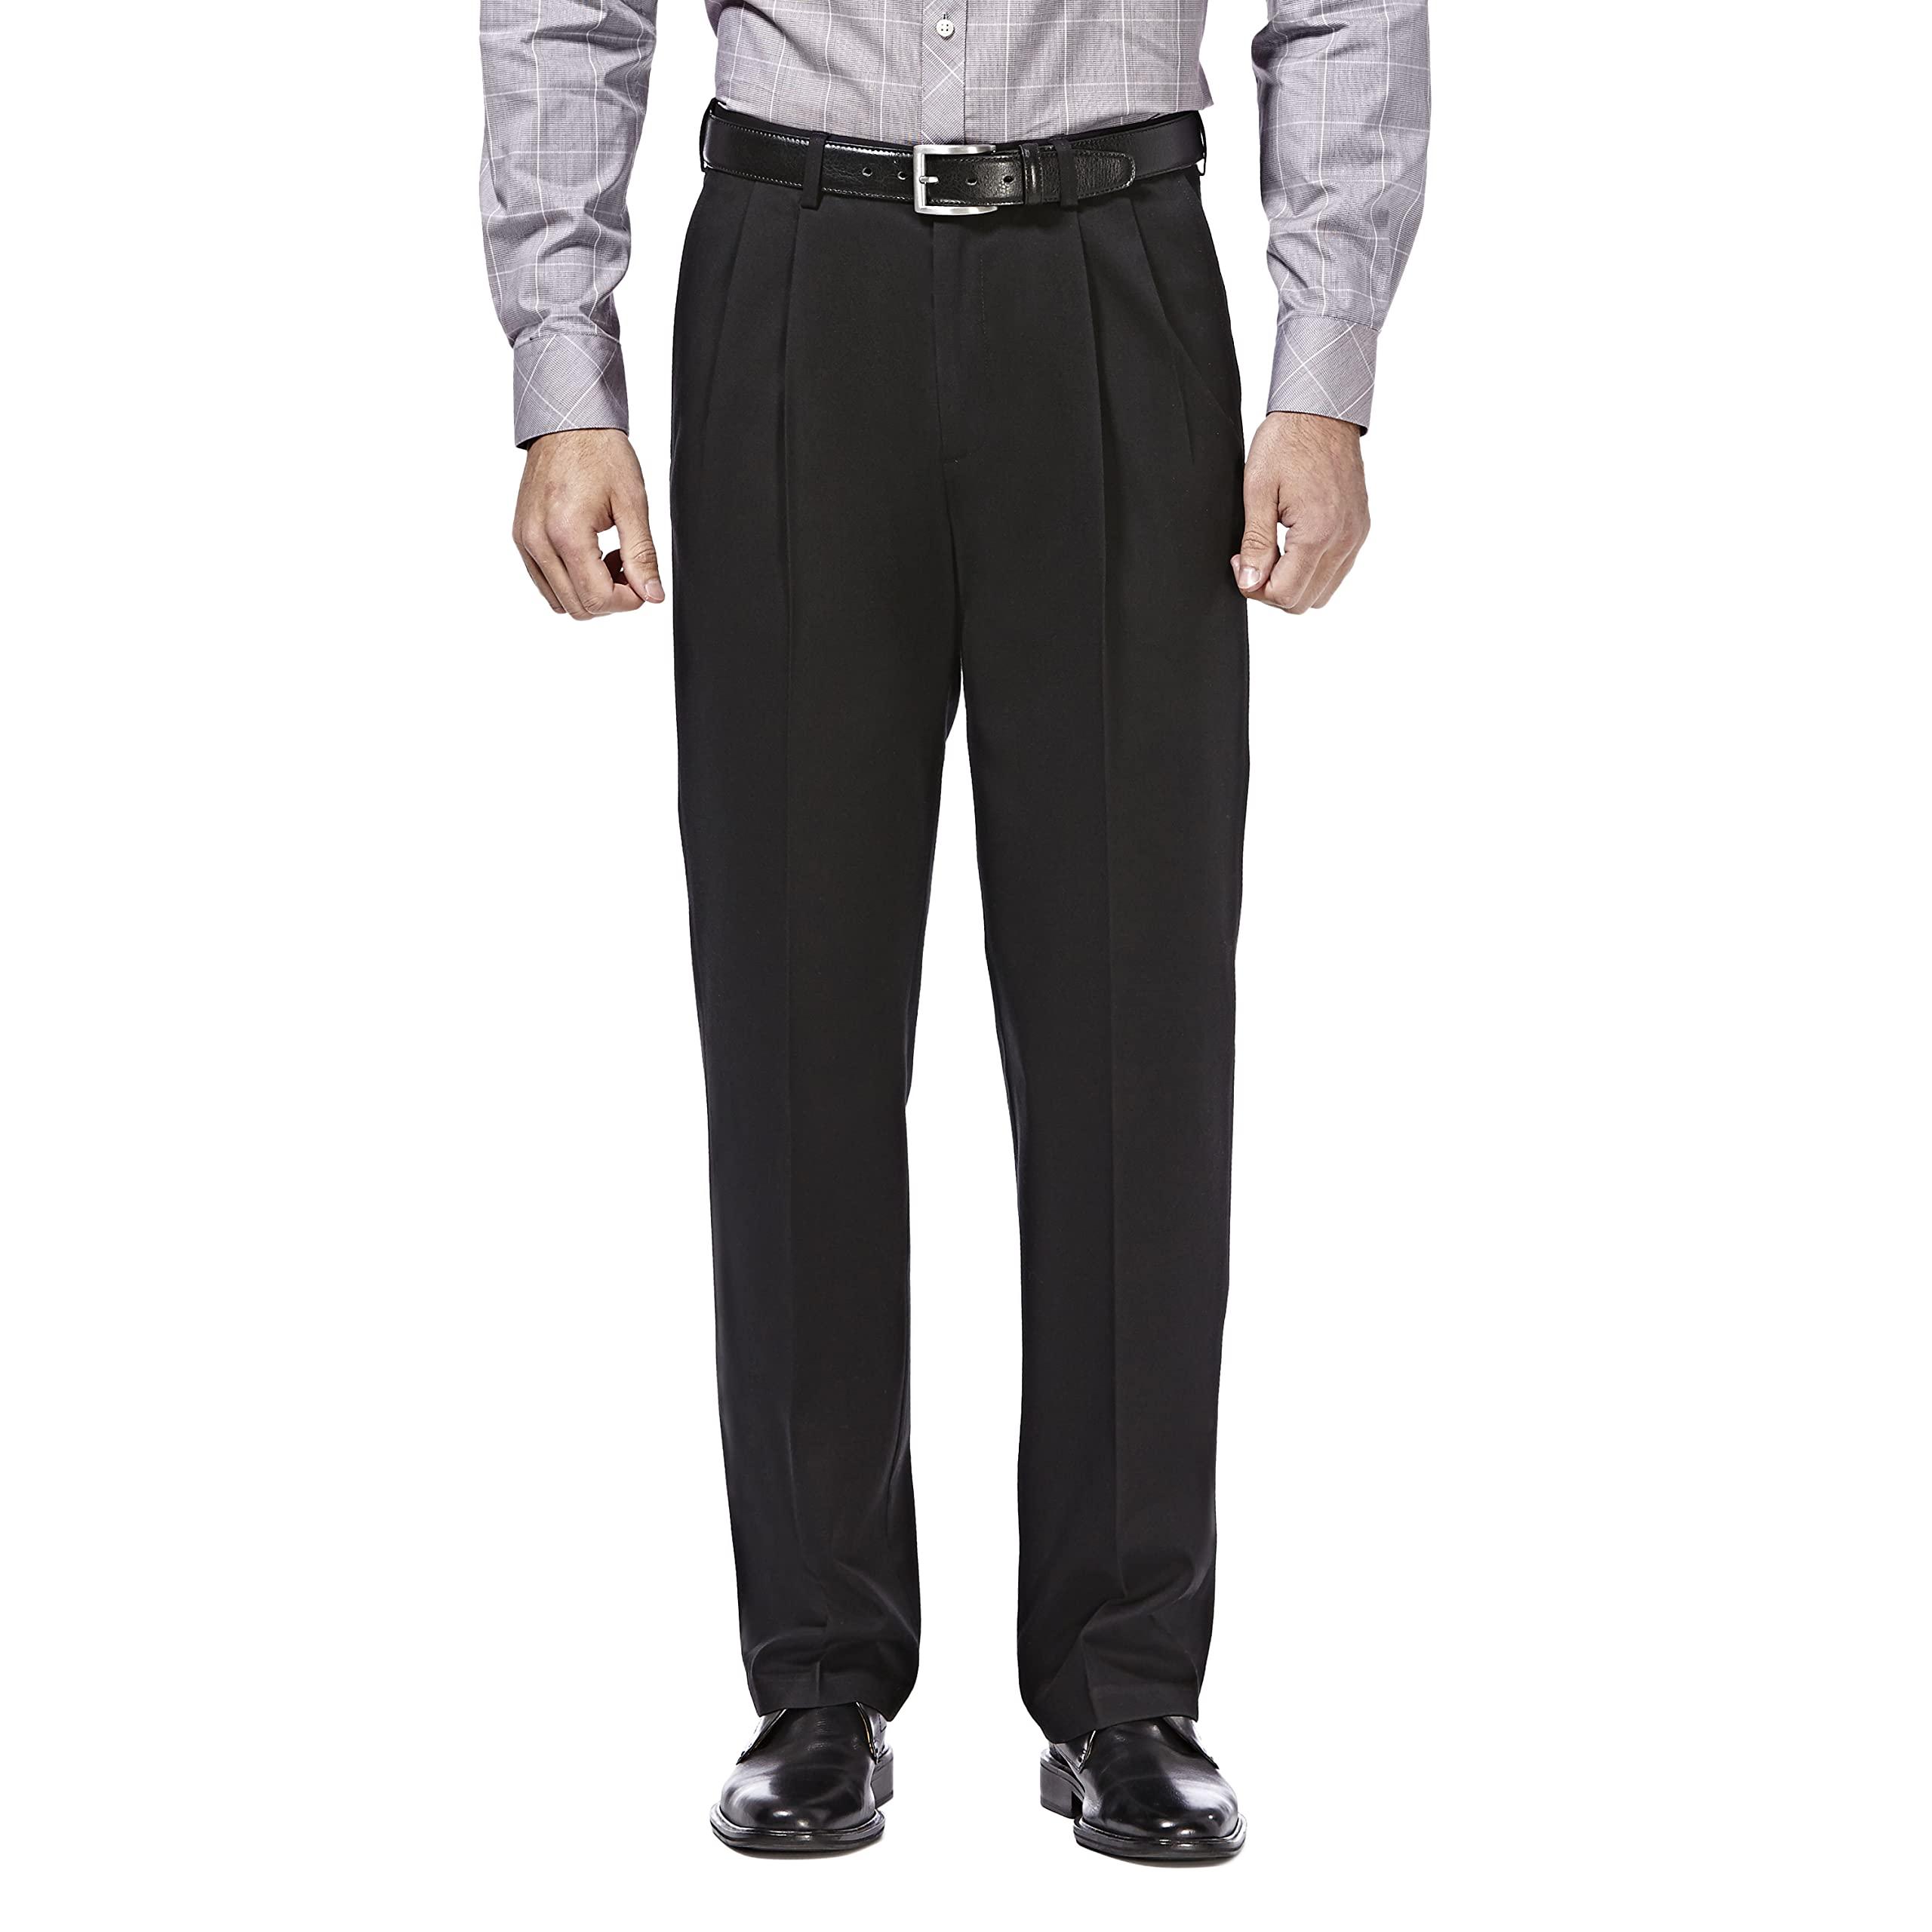 HAggAR Mens Premium No Iron Khaki classic Fit Pleat Front Regular and Big Tall Sizes, Black, 40W x 32L